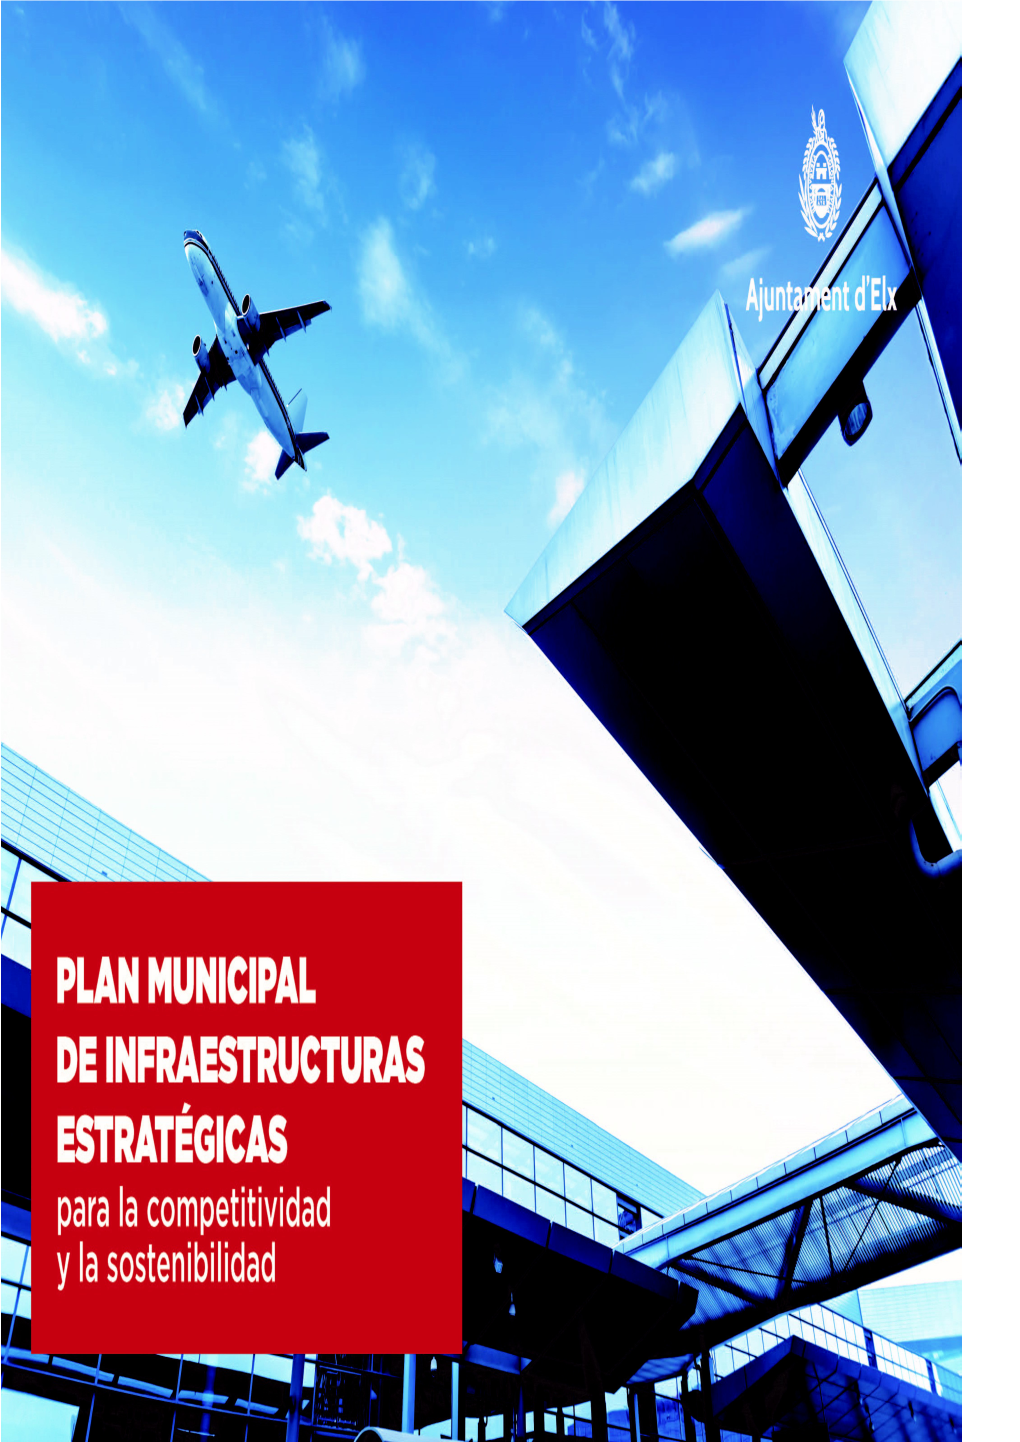 AJUNTAMENT D'elx. Plan De Infraestructuras Estratégicas Para La Competitividad Y La Sosteniblidad